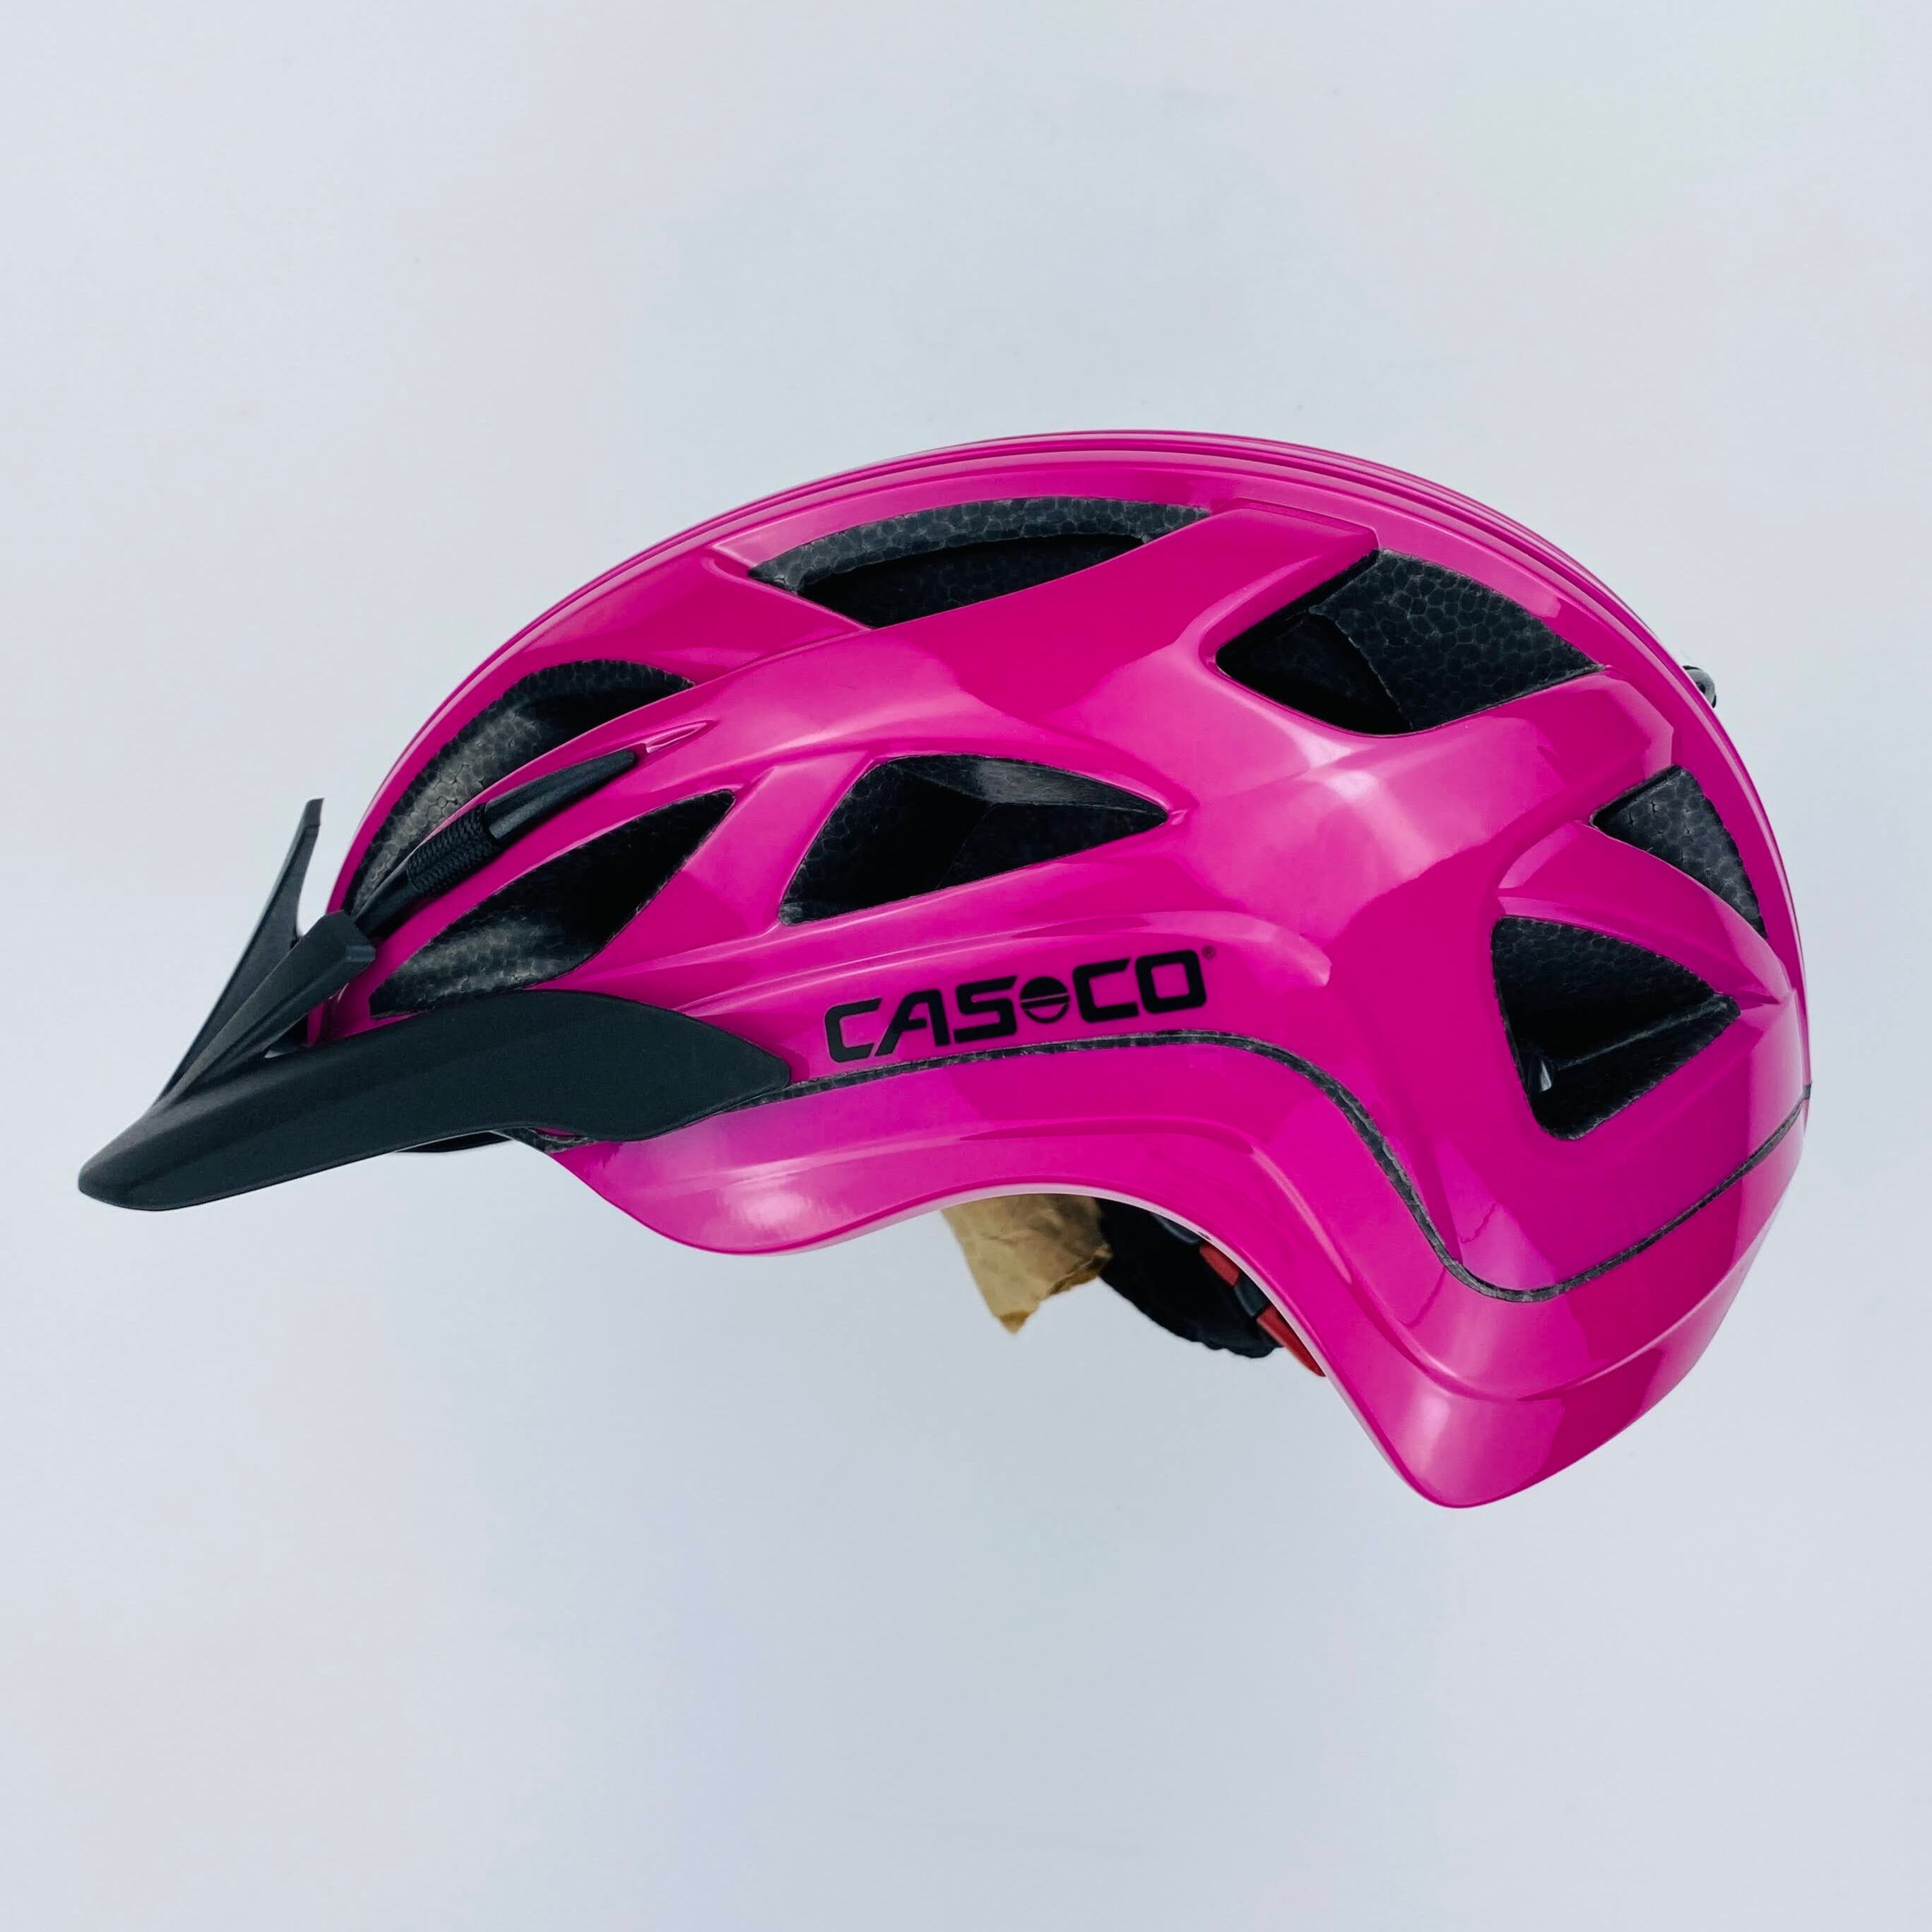 Casco Activ 2 Junior - Segunda mano Casco de ciclismo - Niños - Rosado - 52-56 cm | Hardloop